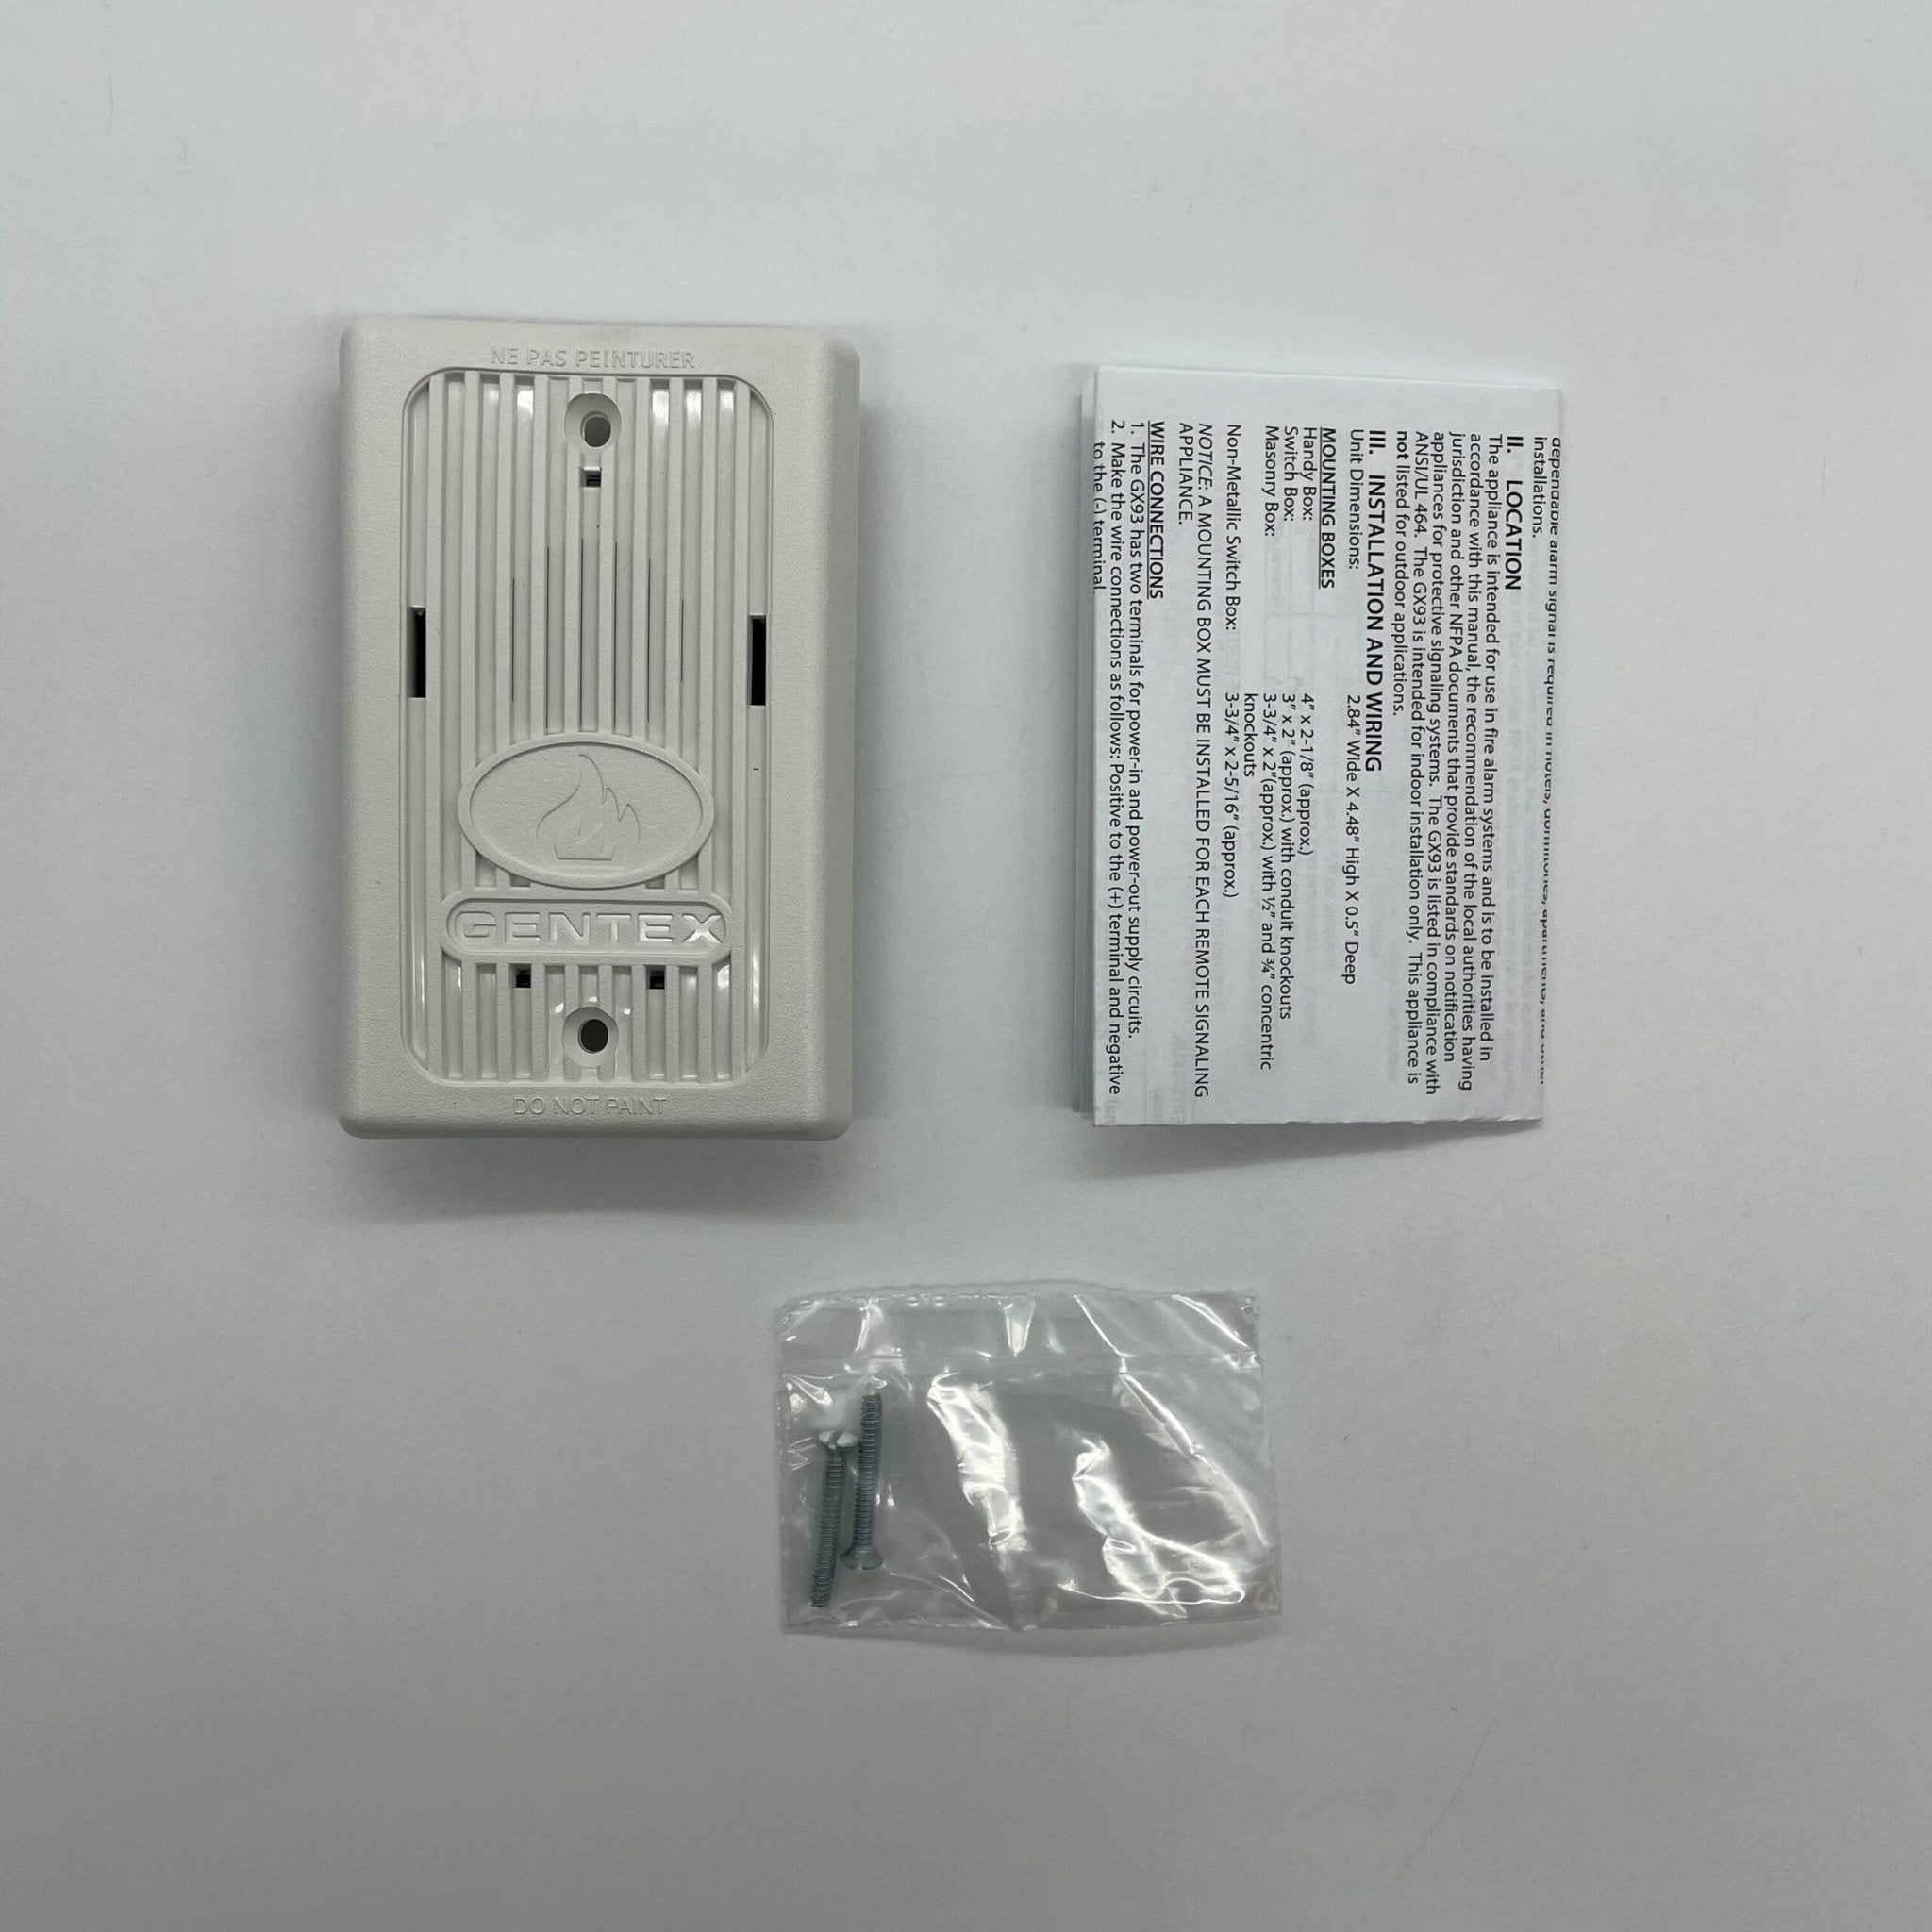 Gentex GX93-W - The Fire Alarm Supplier